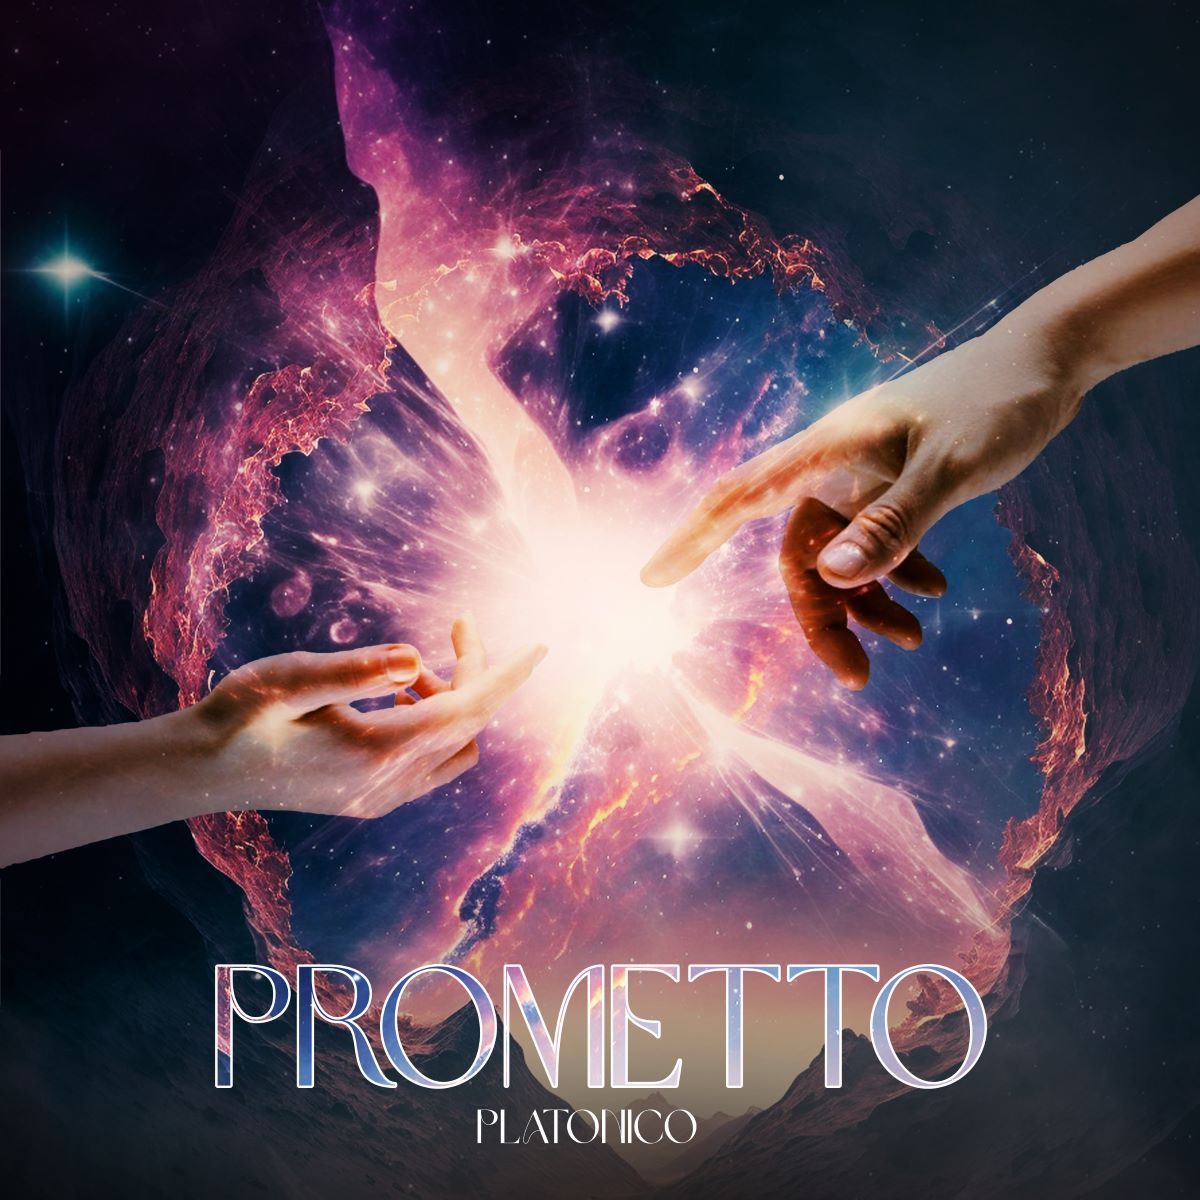 Platonico - “Prometto”